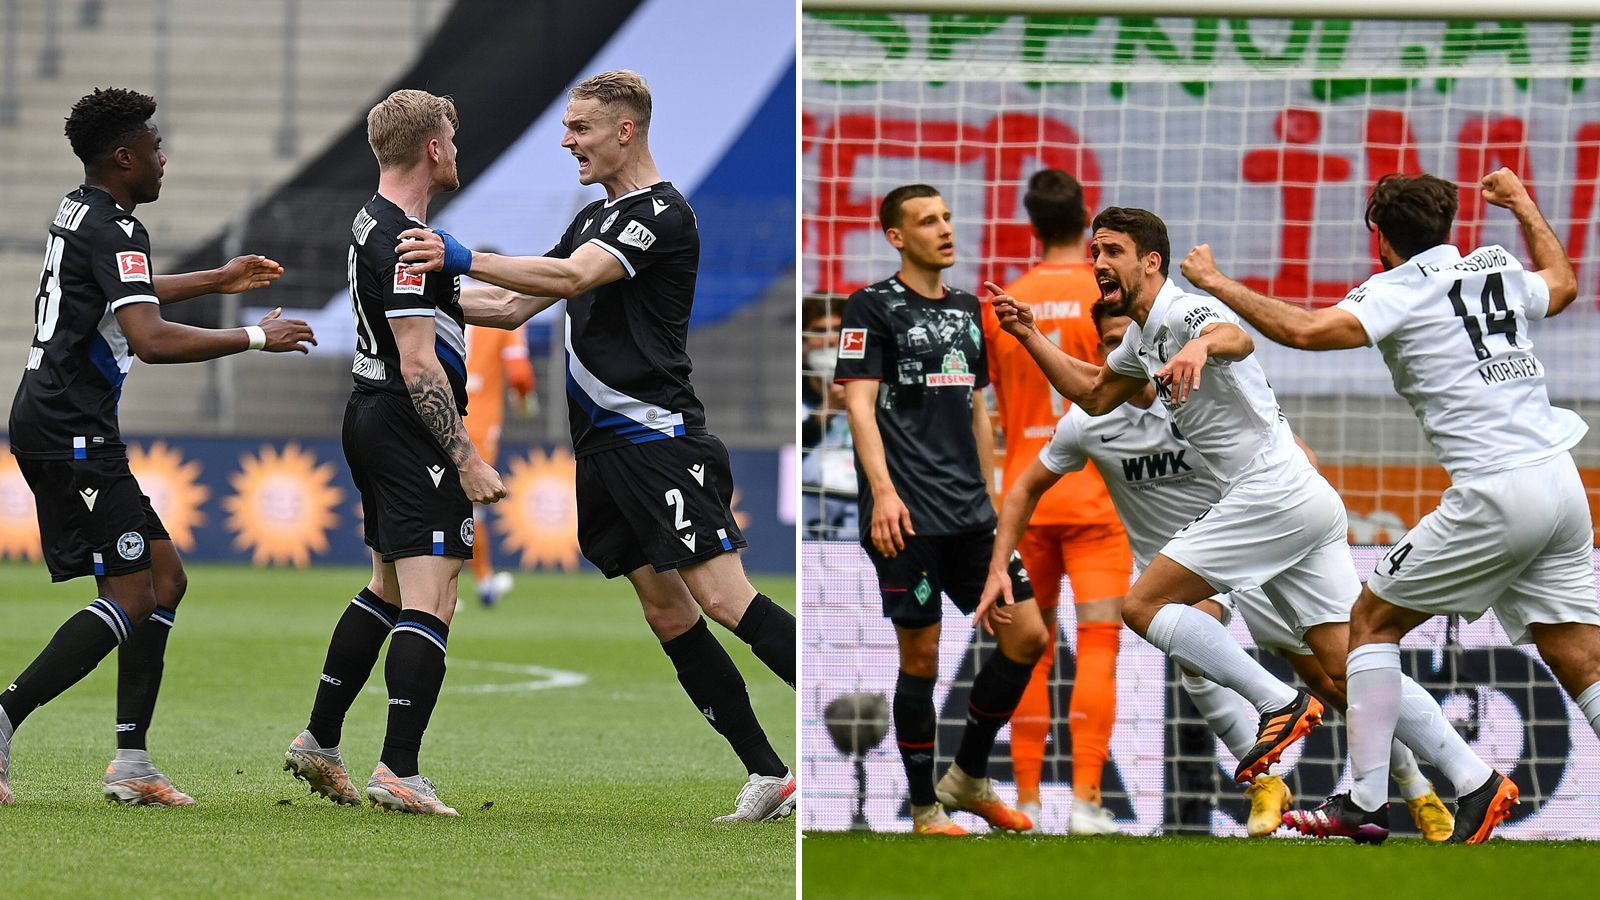 
                <strong>So lief der Abstiegskampf am 33. Spieltag</strong><br>
                Durch den 2:0-Sieg über Werder Bremen ist Augsburg gerettet, auch die Hertha darf jubeln. In Bielefeld wird trotz guter Leistung gezittert, Köln braucht nun ein Wunder. So lief der 33. Spieltag im Abstiegskampf.
              